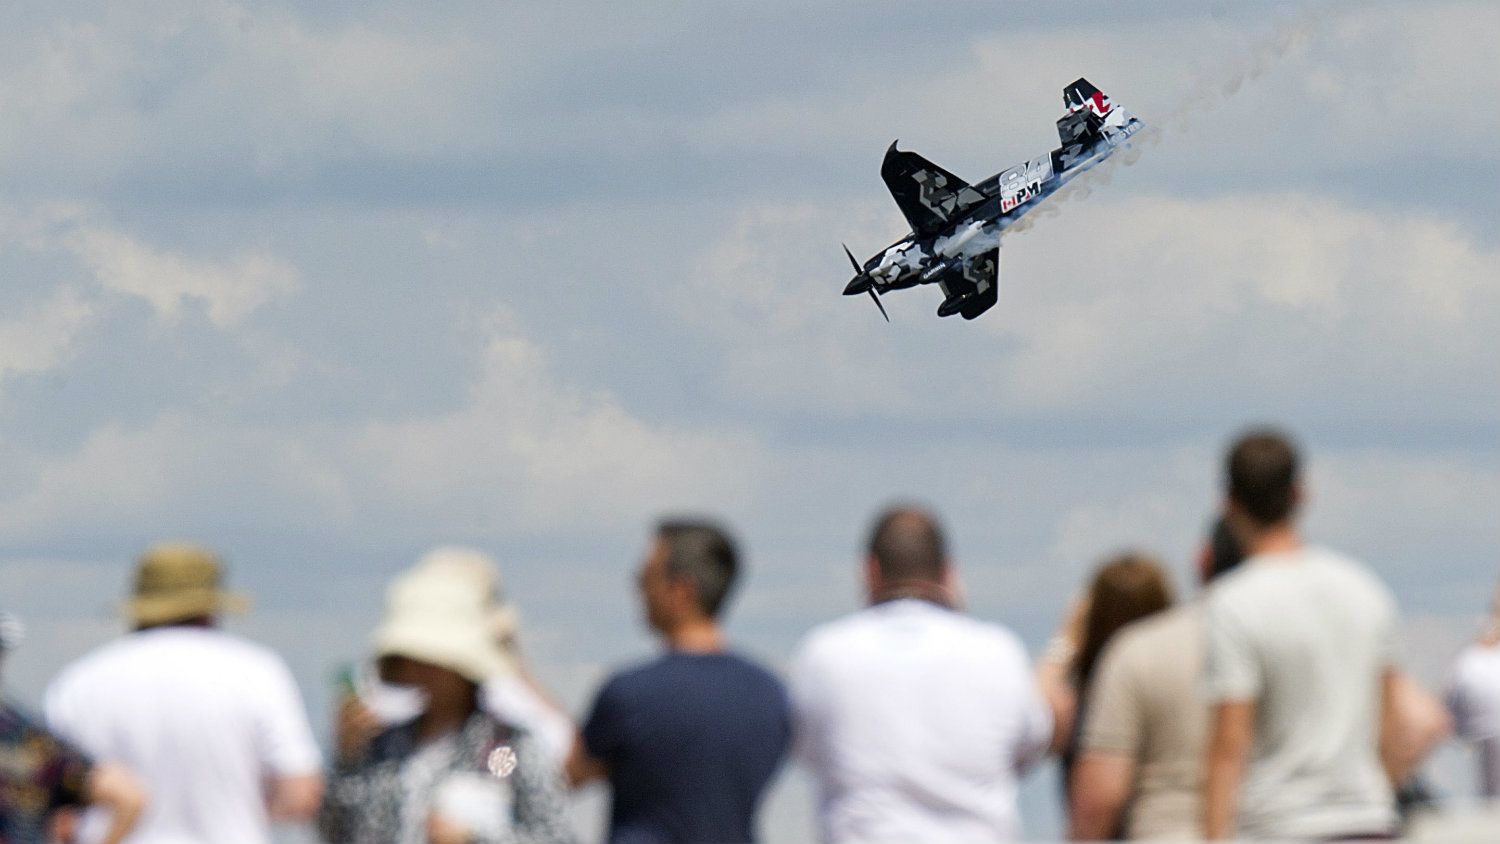 Nem lesz több Red Bull Air Race, a cég lefújta a versenyeket